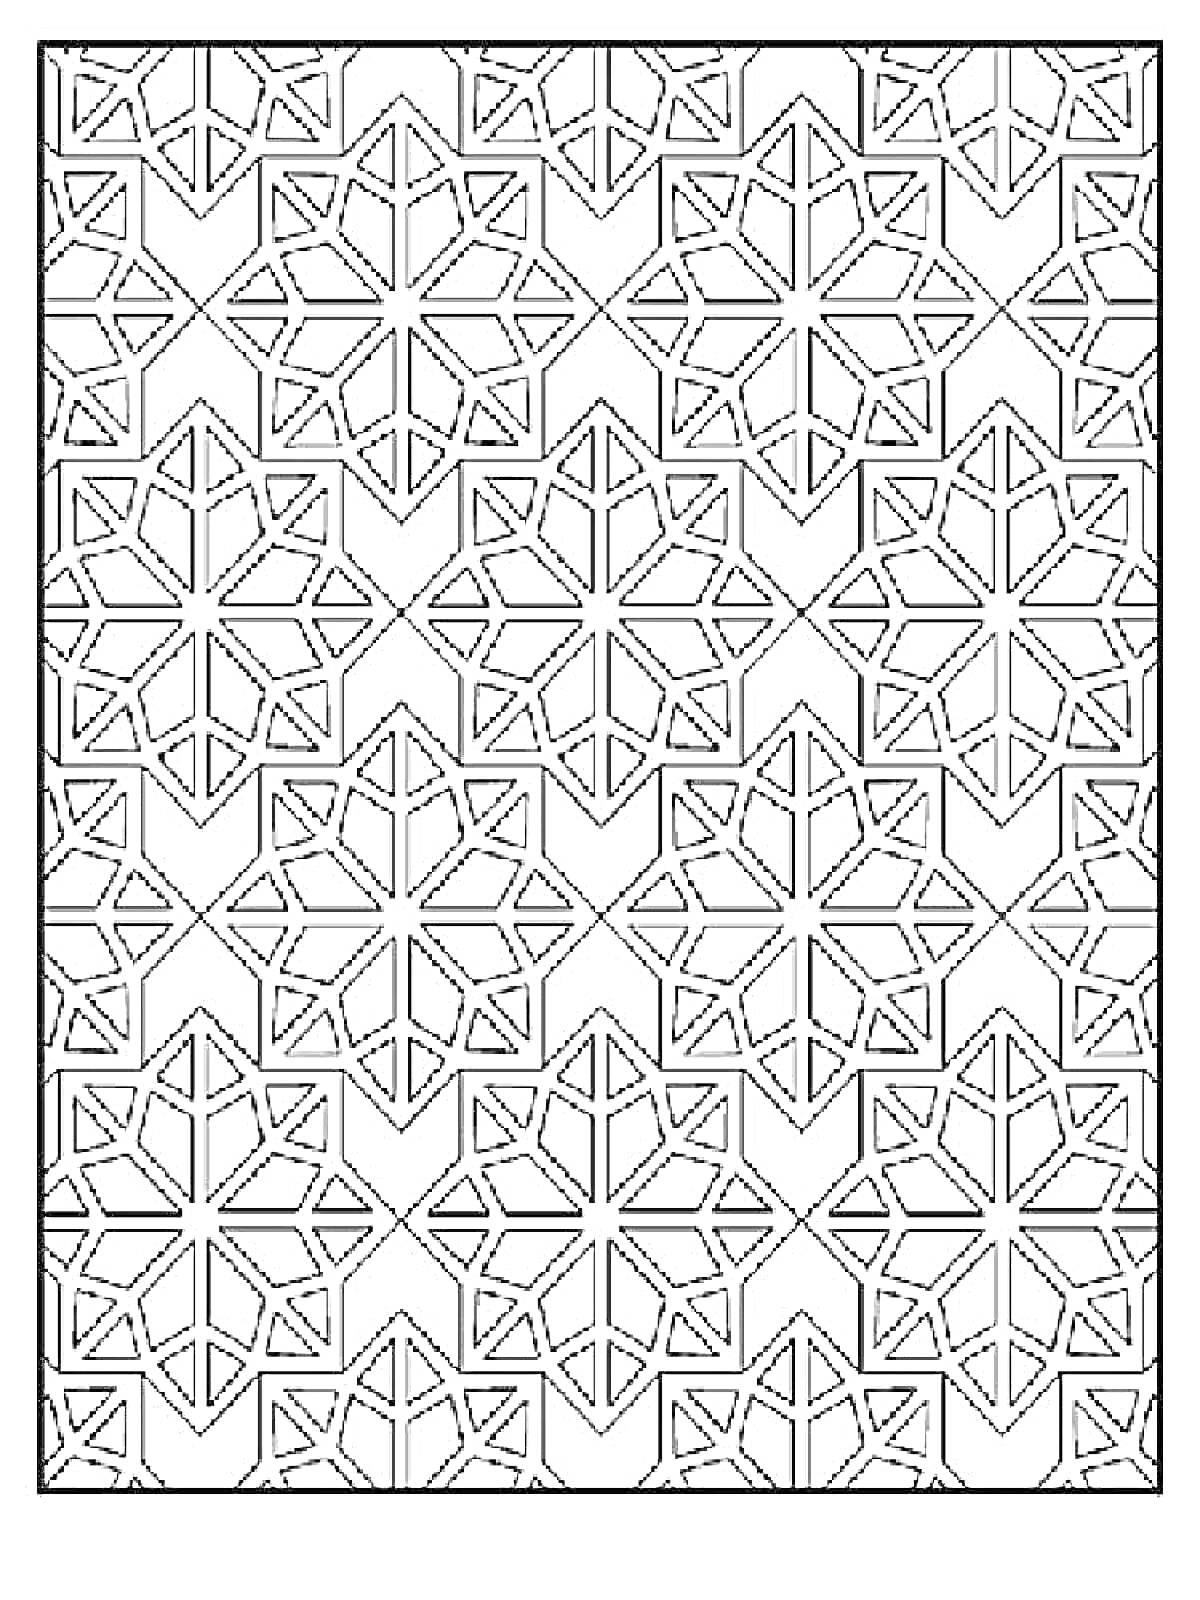 Раскраска Мозаика антистресс с шестиугольными звездами и треугольниками